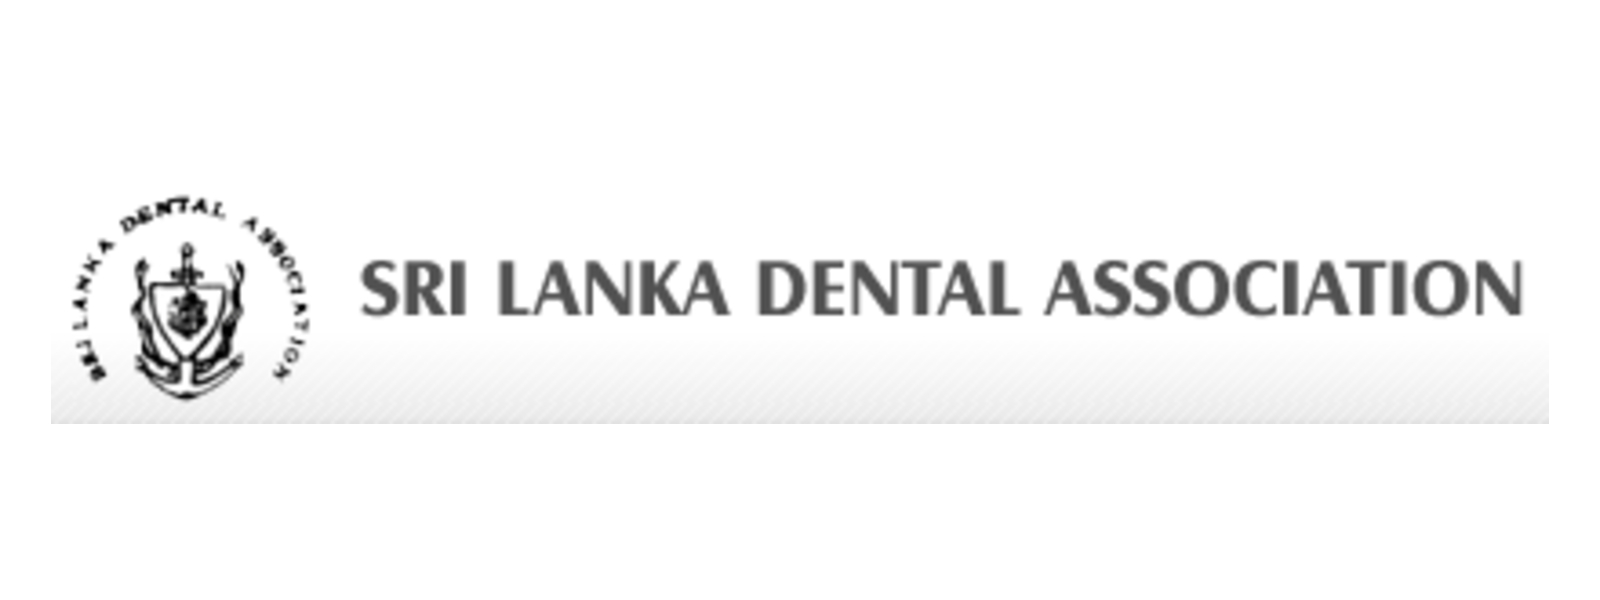 Sri Lanka Dental Association launch 24-hour Token strike